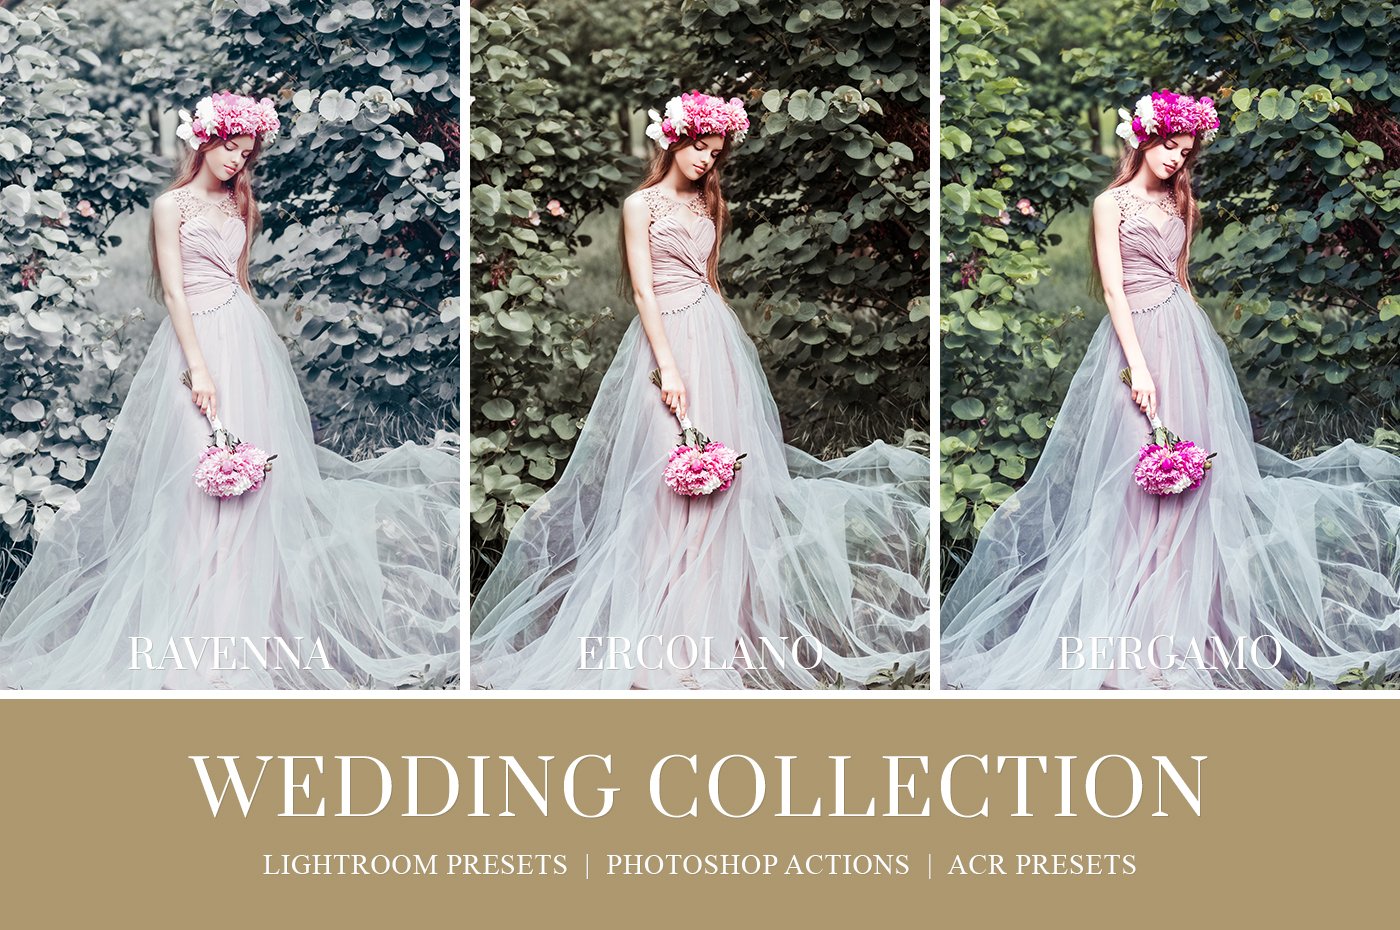 Wedding Lightroom Presets vol. 2preview image.